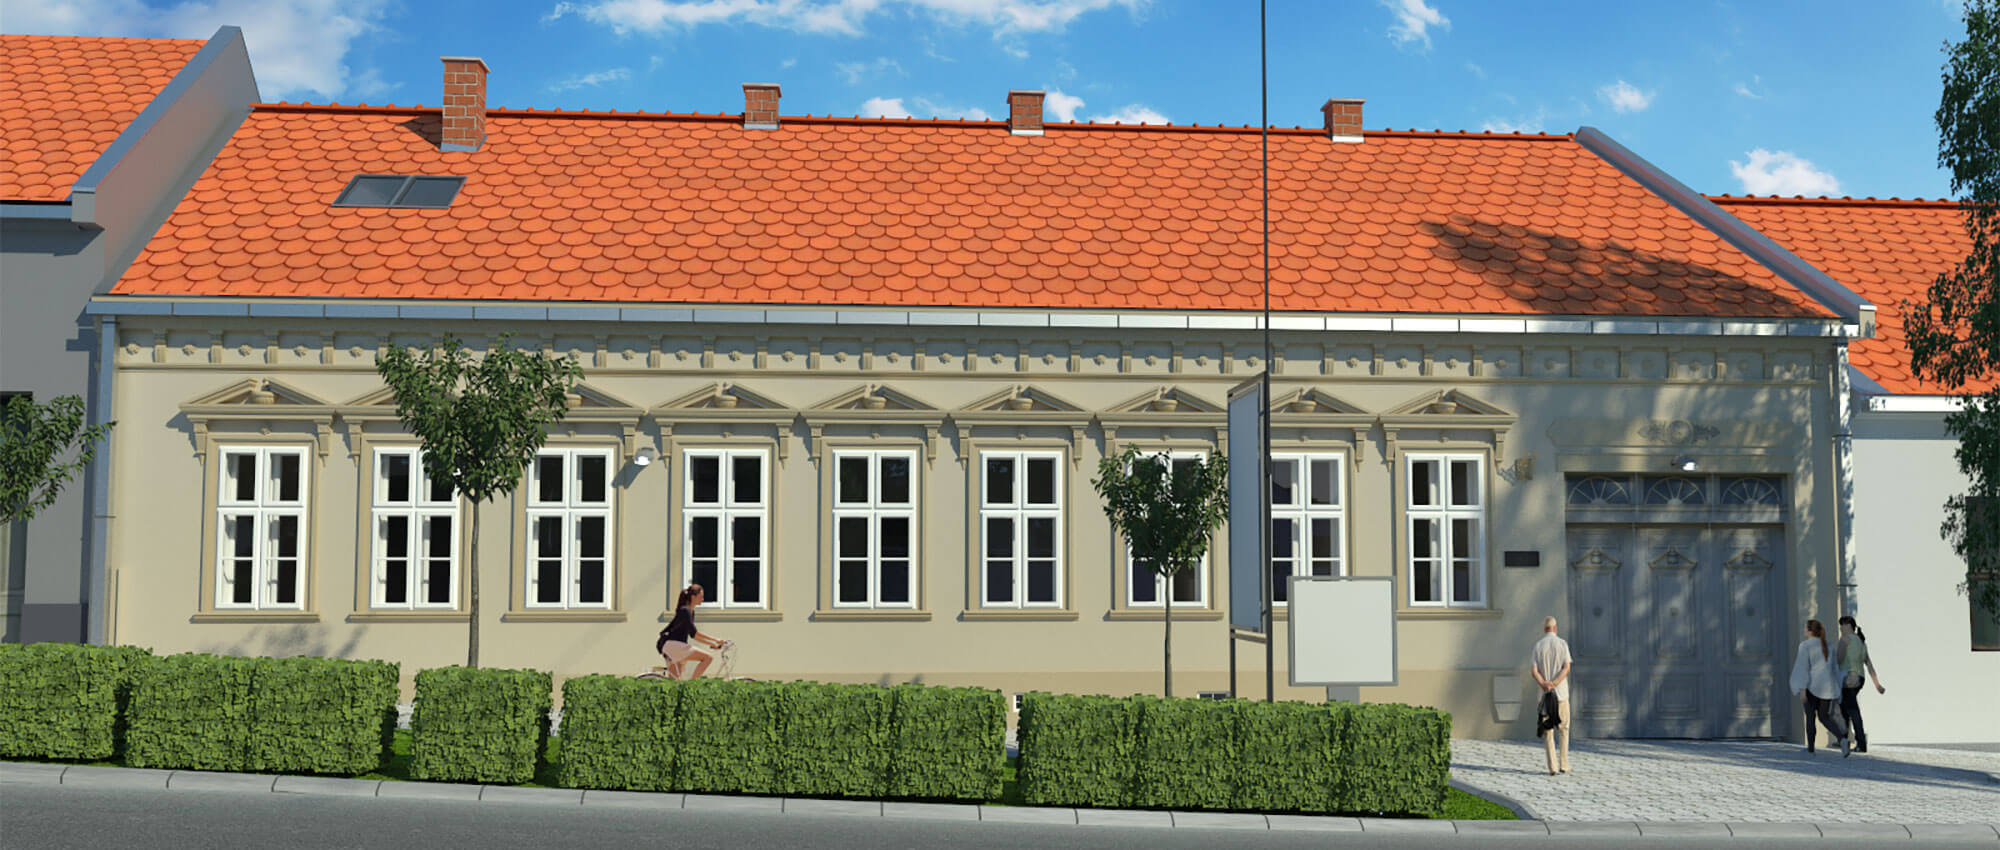 Galerija Save Šumanovića u Šidu (projekat rekonstrukcije)